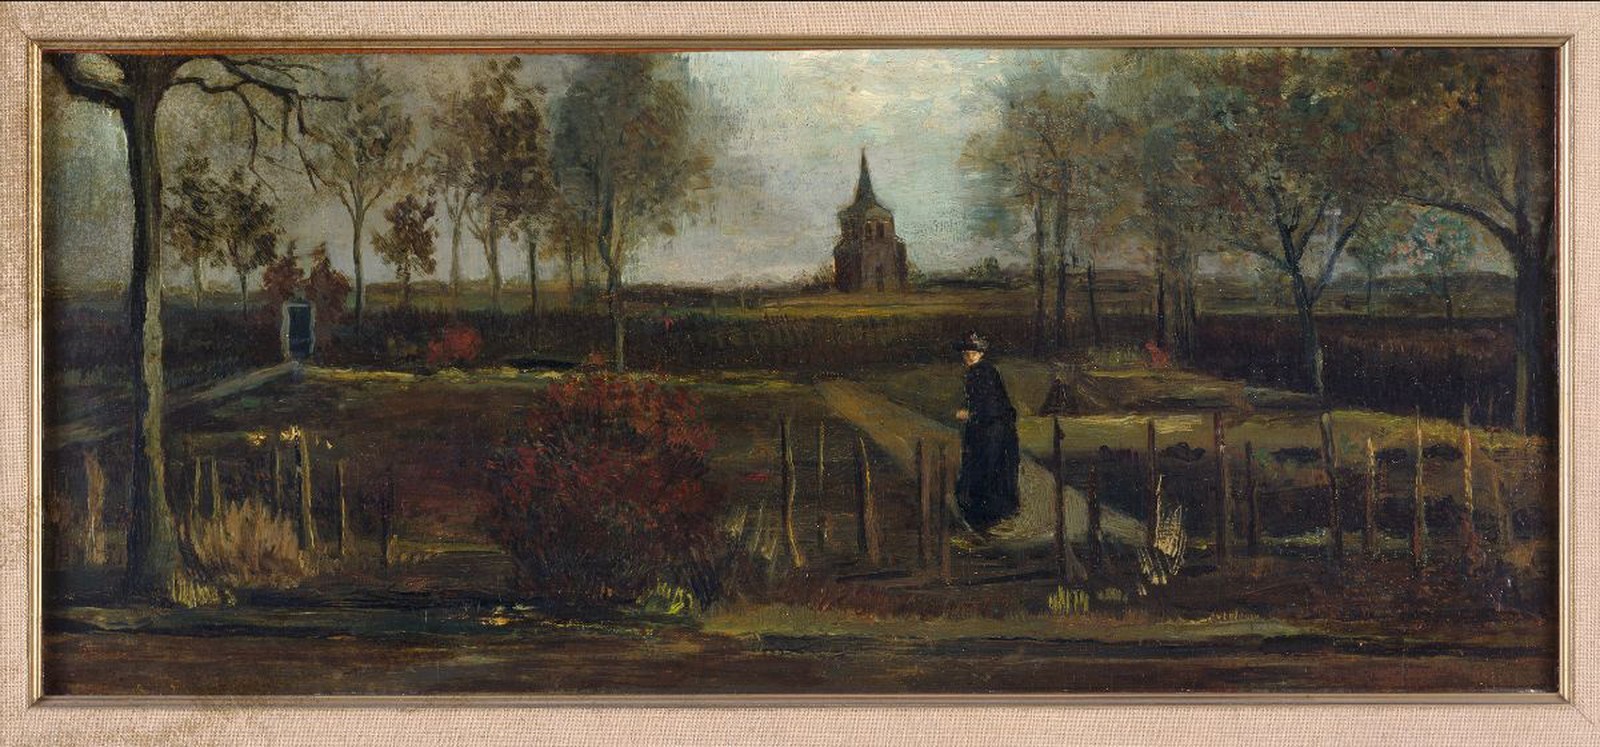 Quadro de Van Gogh é roubado de museu fechado na quarentena (Foto: Divulgação/Groninger Museum)